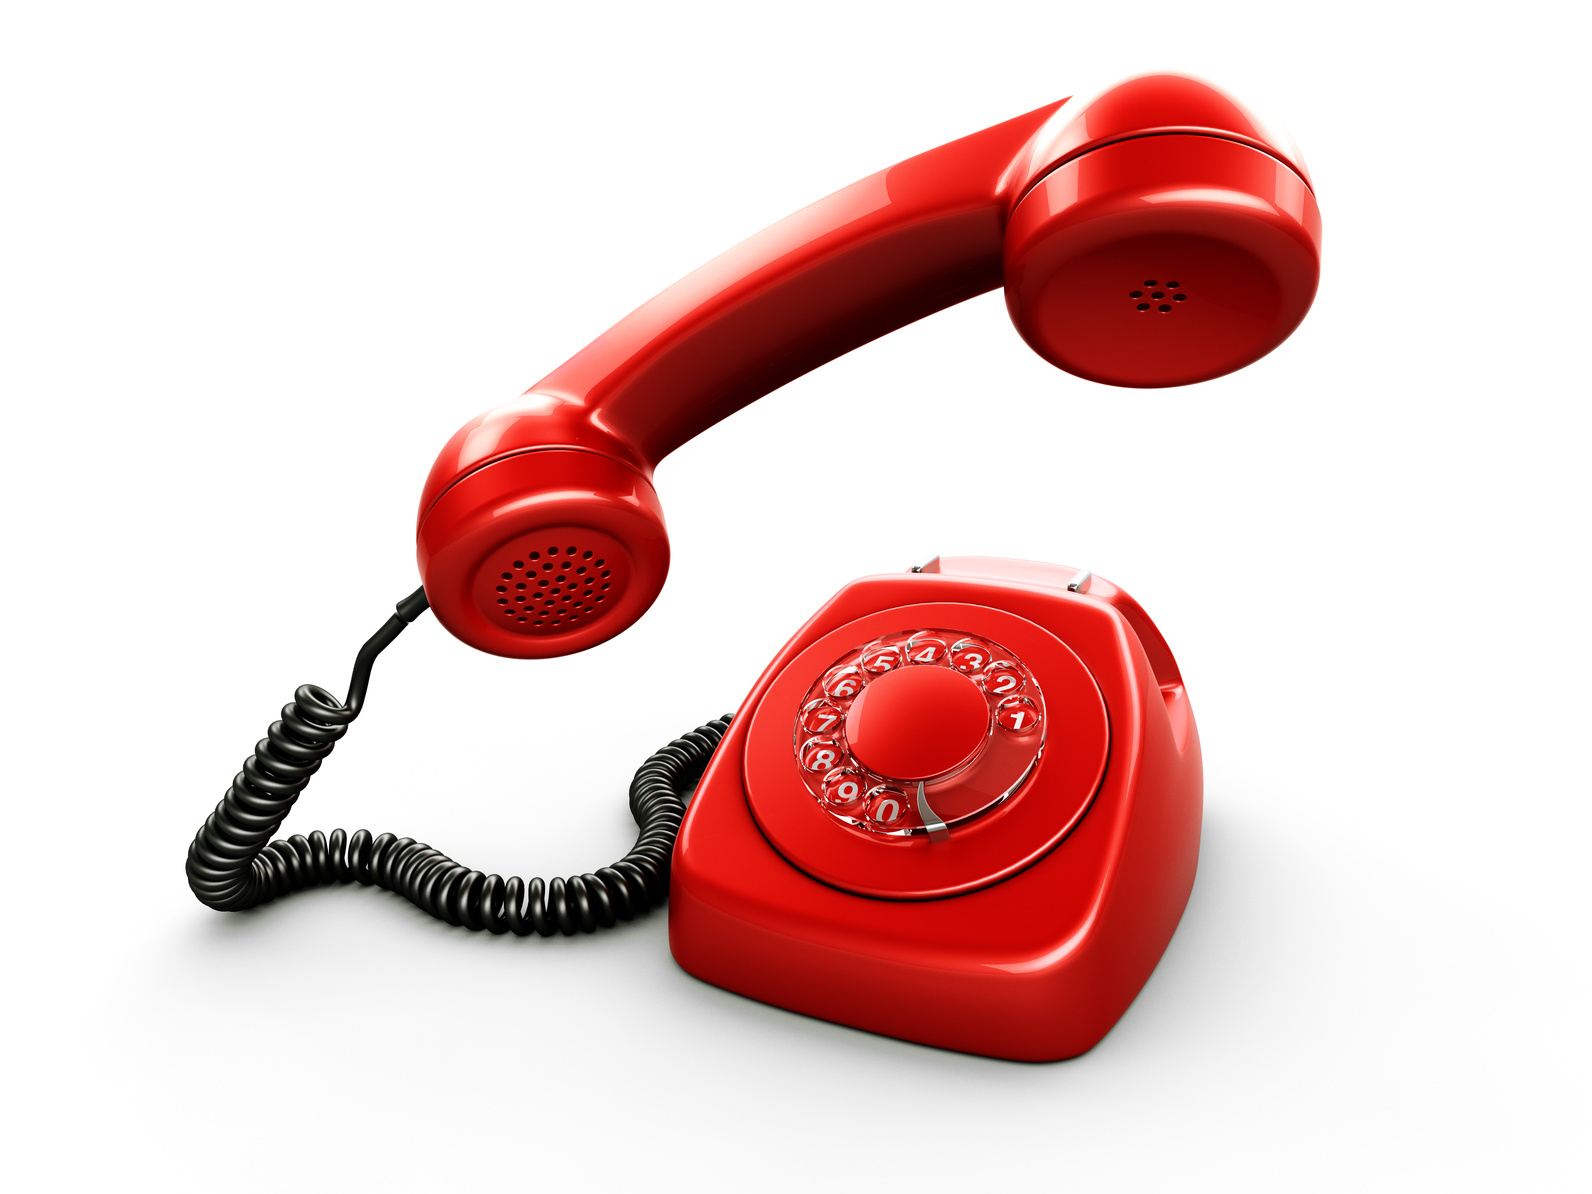 Охотно телефон. Телефон доверия. Телефонная трубка. Красная телефонная трубка. Изображение телефона.